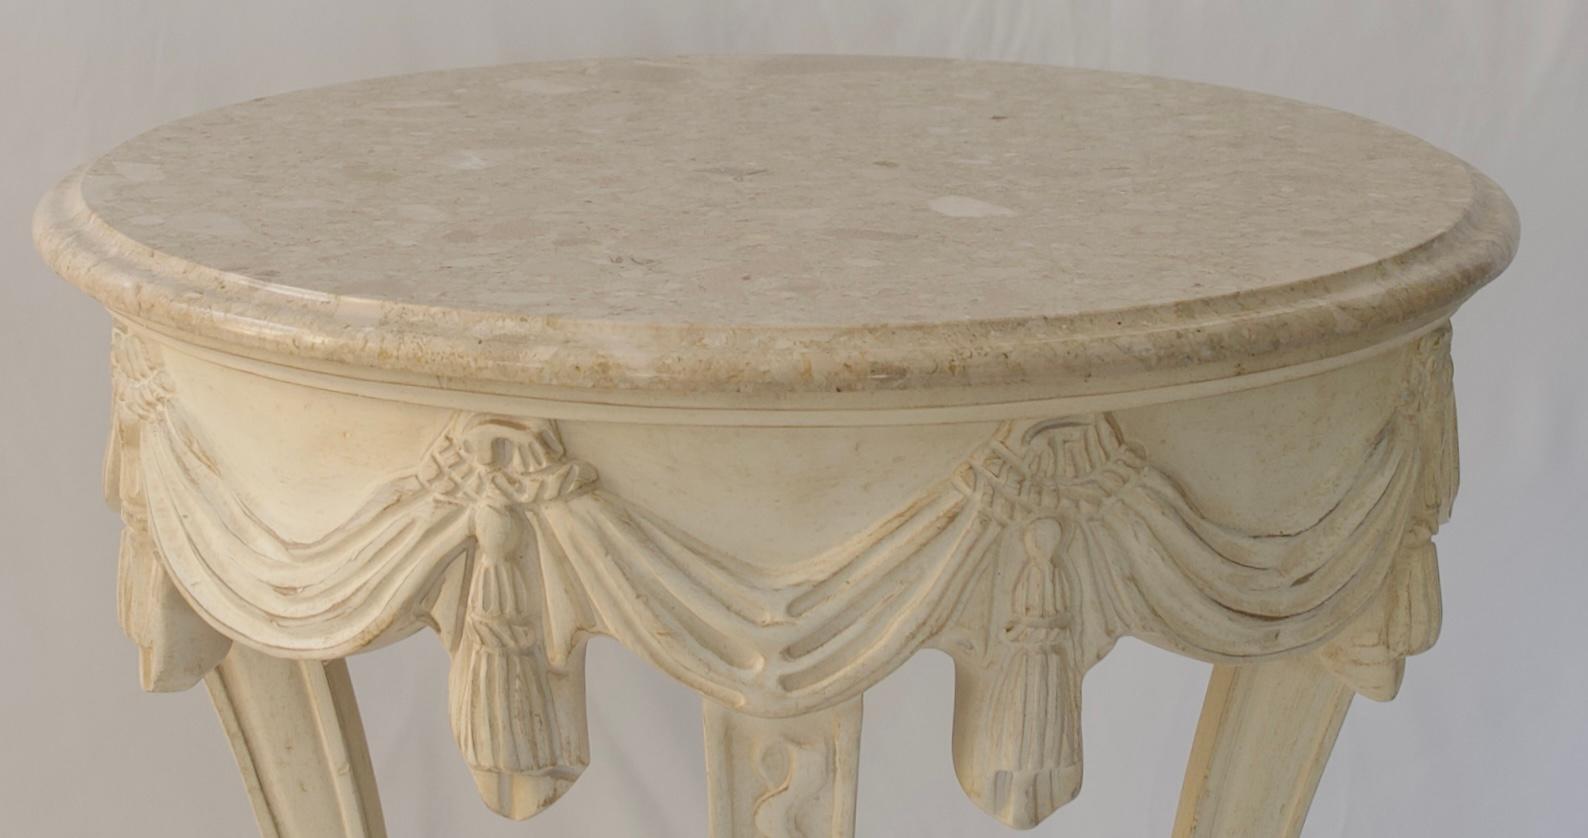 Table d'appoint vintage française de style Louis XVI avec un plateau en marbre italien beige. 
Les motifs autour du plateau et les pieds courbés rendent cette table d'appoint de style Louis XVI particulièrement attrayante. 
Des motifs sculptés à